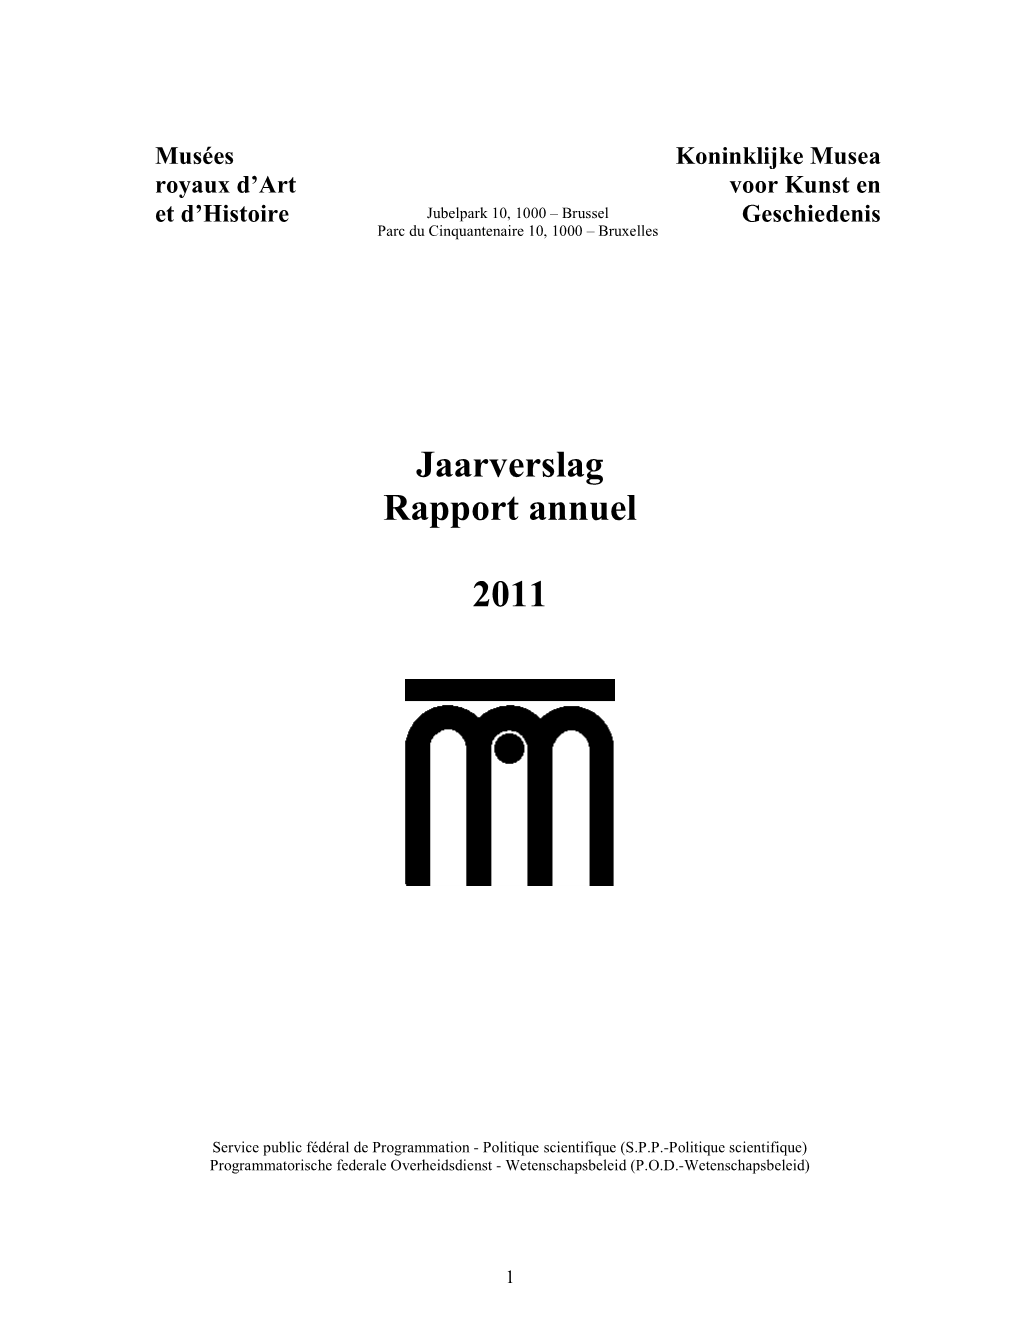 Jaarverslag Rapport Annuel 2011